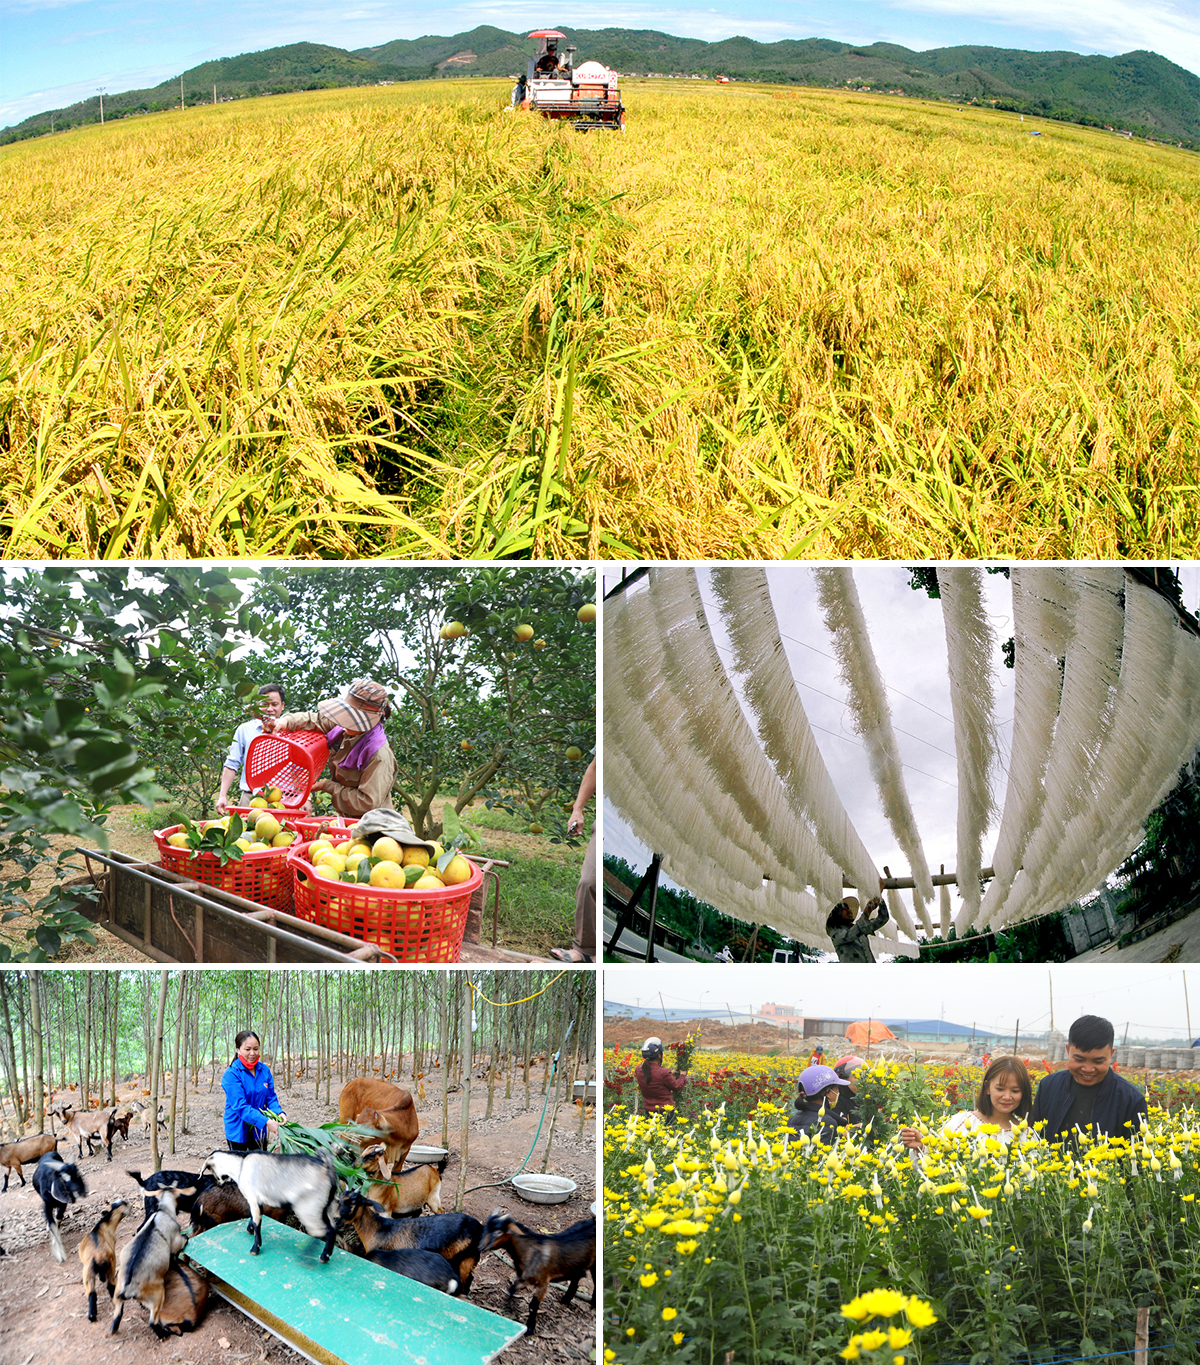 Thu hoạch lúa trên cánh đồng mẫu lớn; Thu hoạch cam ở xã Đồng Thành; Làng nghề làm miến gạo; Mô hình chăn nuôi ở xã Minh Thành; Trồng hoa cảnh ở thị trấn Yên Thành.